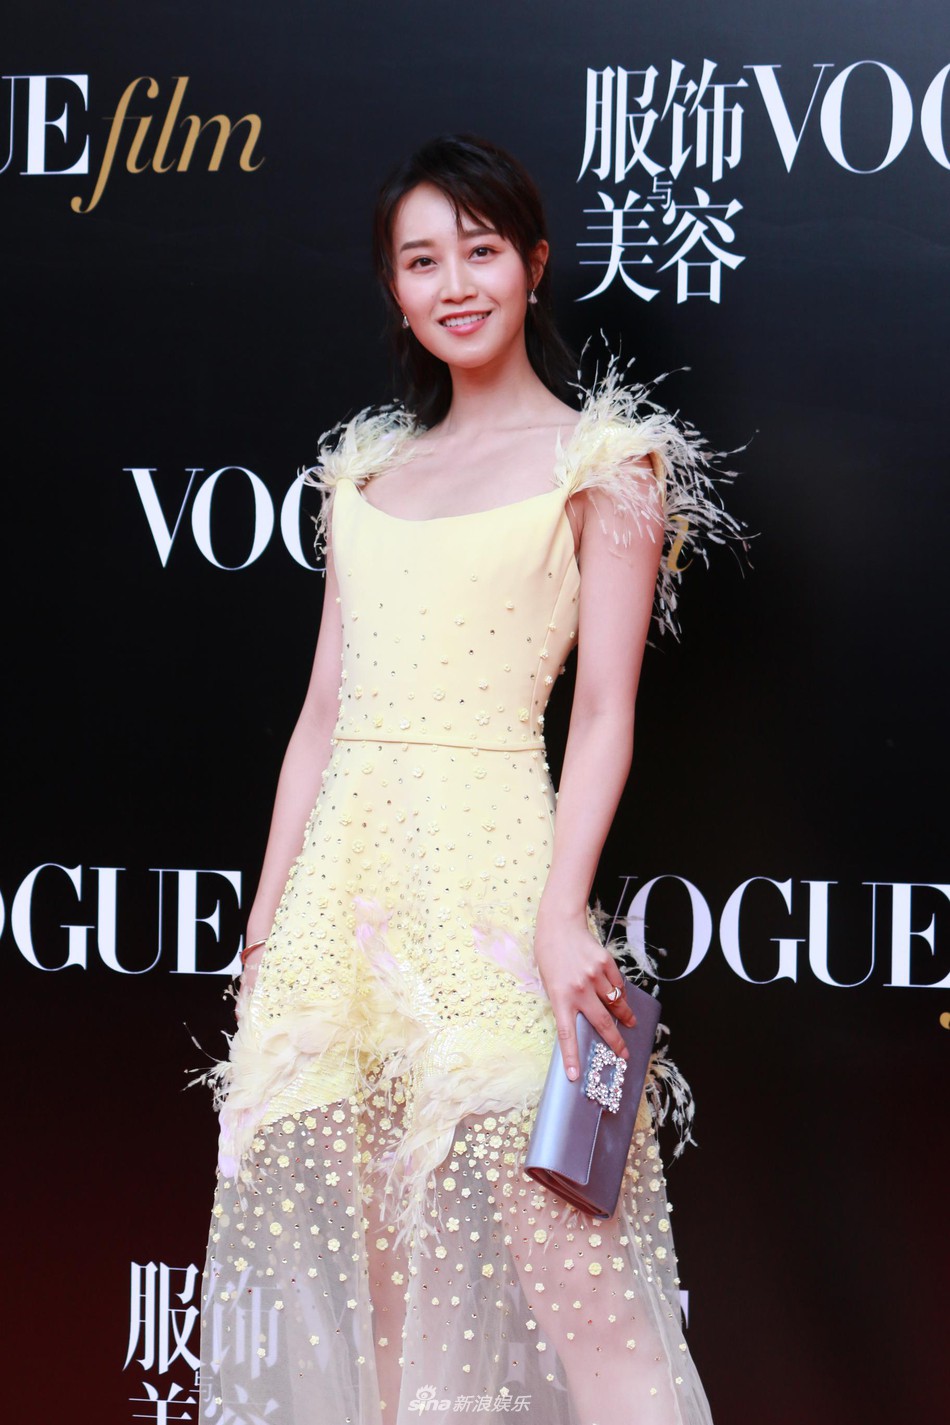 Thảm đỏ Vogue: Angela Baby trở thành tâm điểm vì đẹp xuất sắc, lấn át Dương Mịch - Lưu Thi Thi - Ảnh 29.